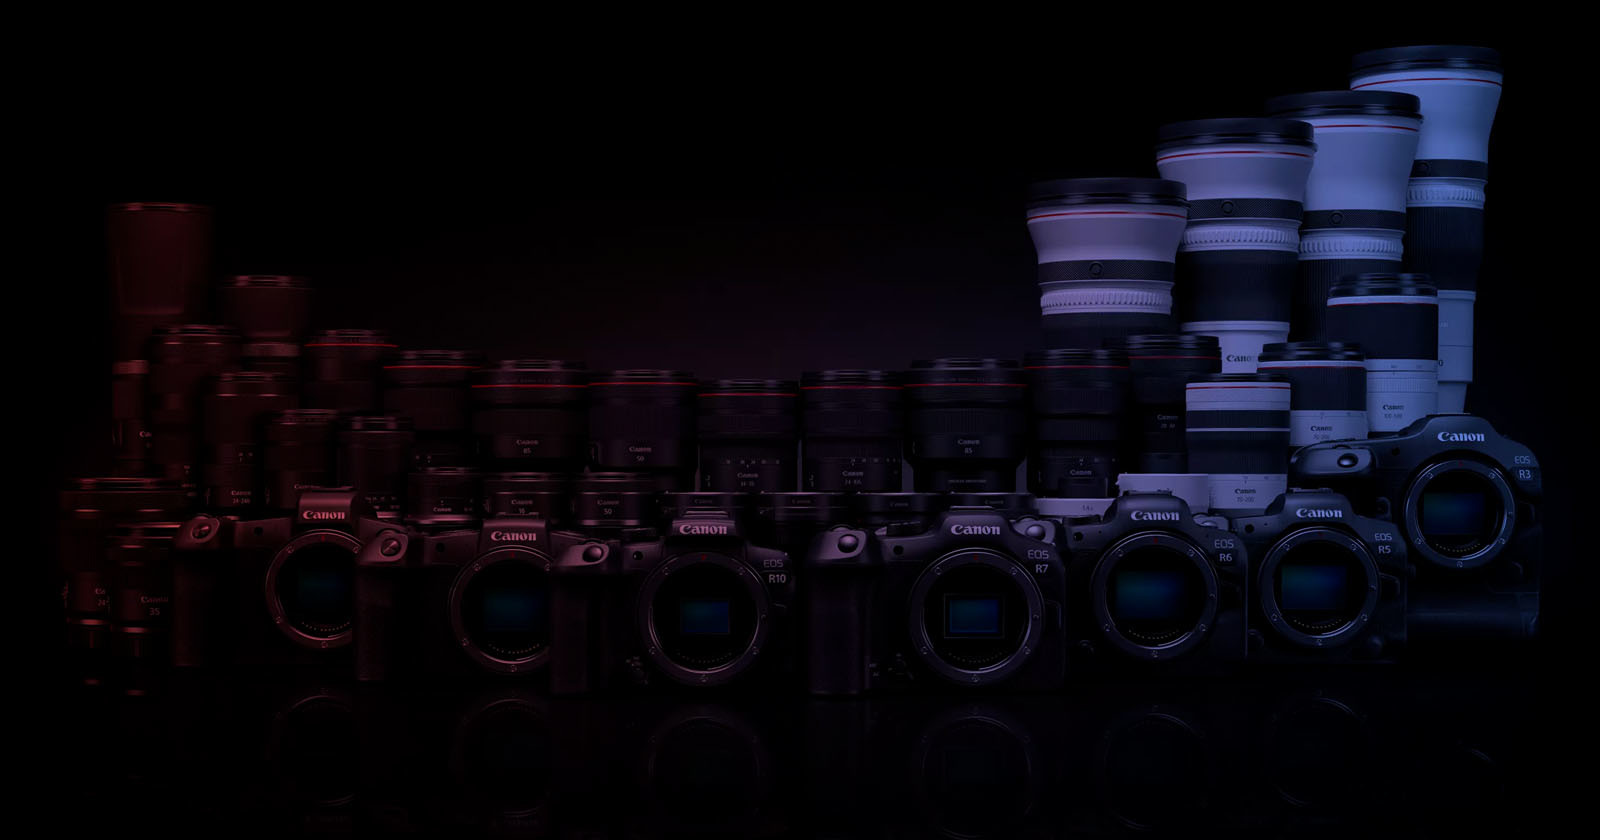  canon japan increase prices cameras lenses 